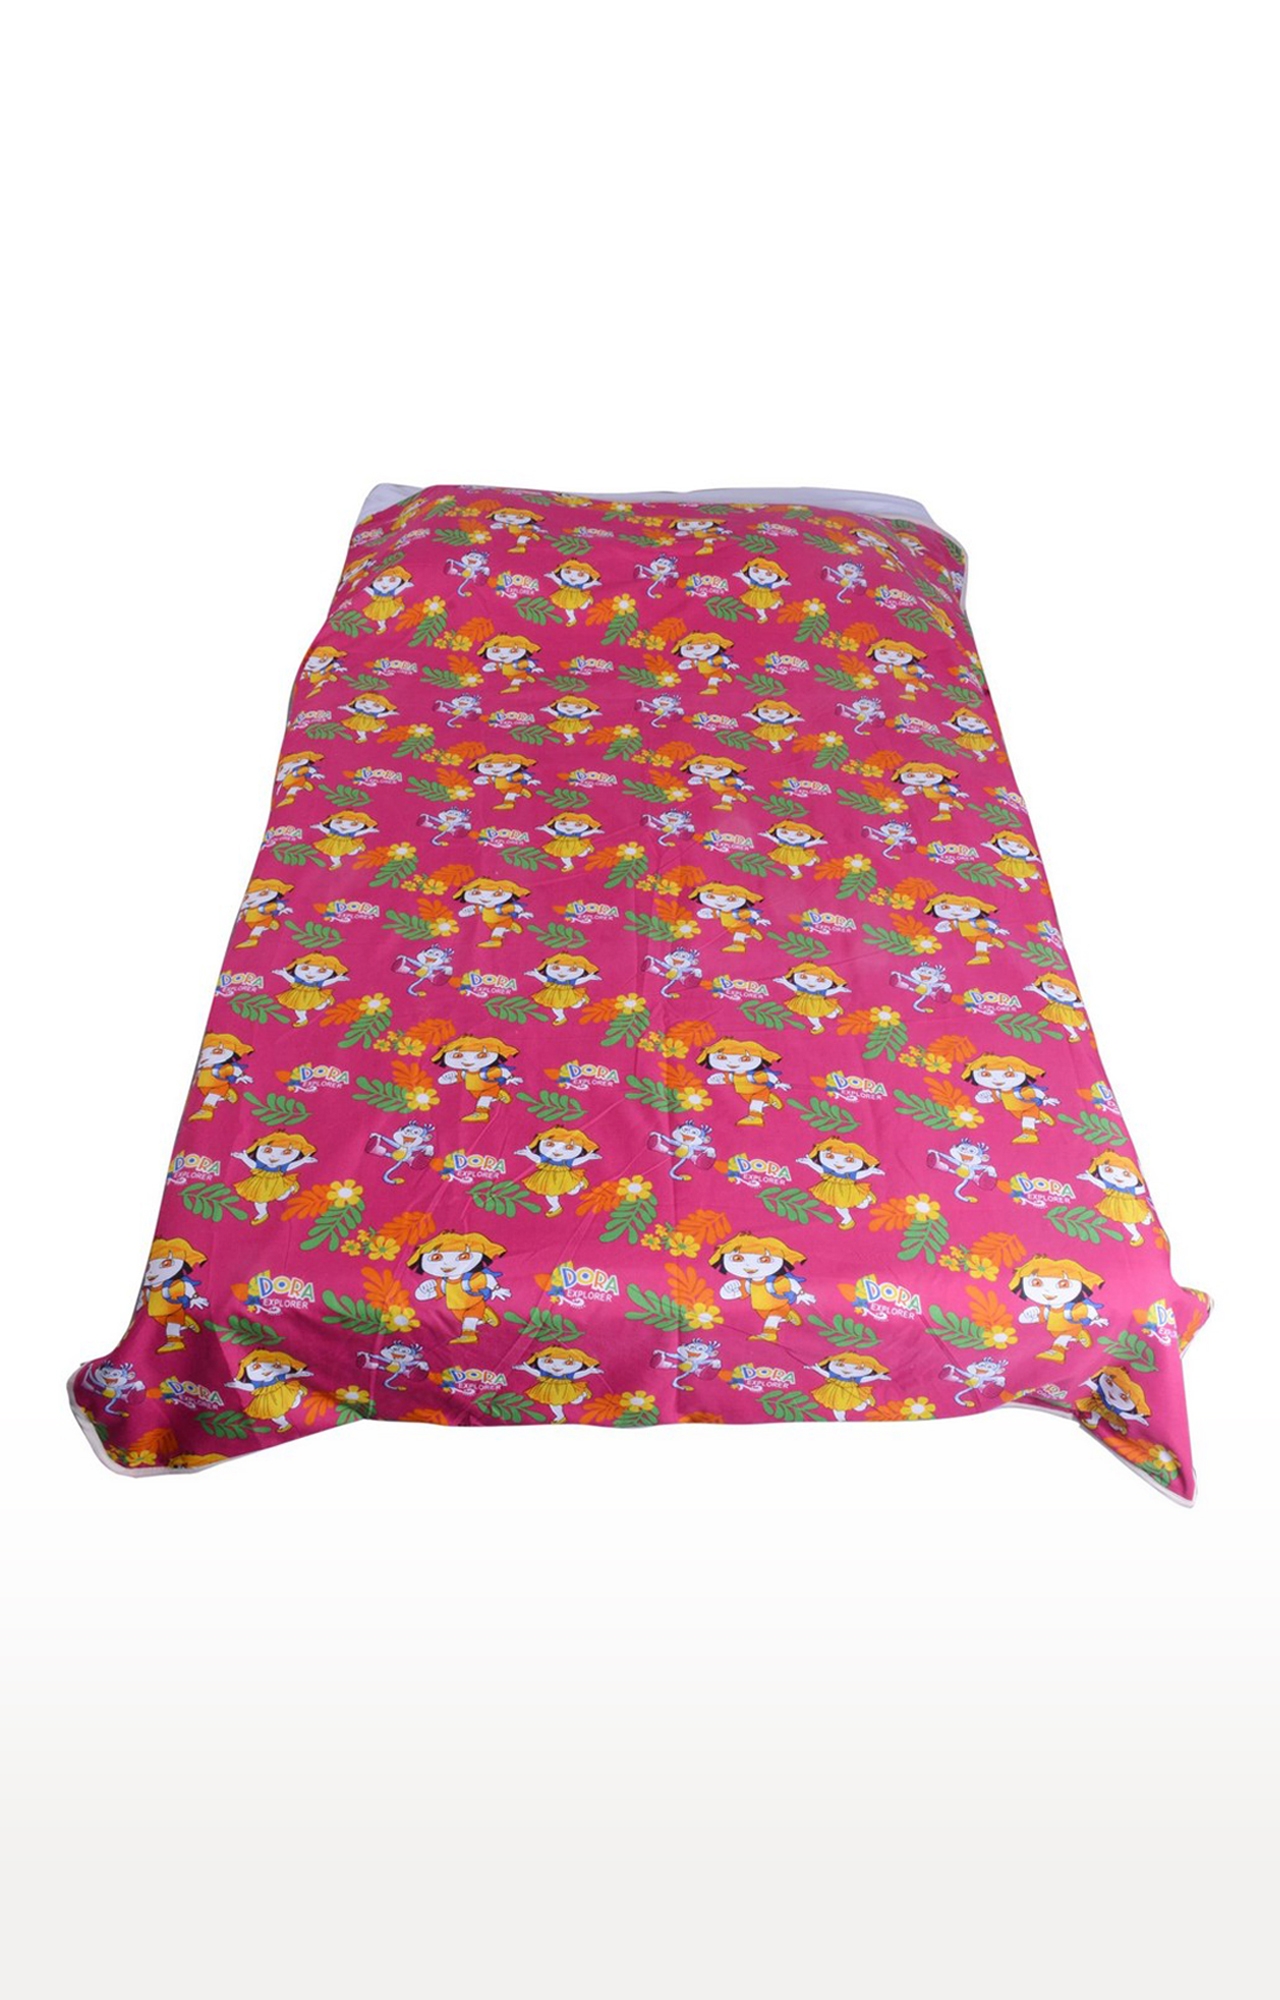 V Brown | Dora Explorer Printed Cotton 3 Layer Single Bed Quilt Dohar 1